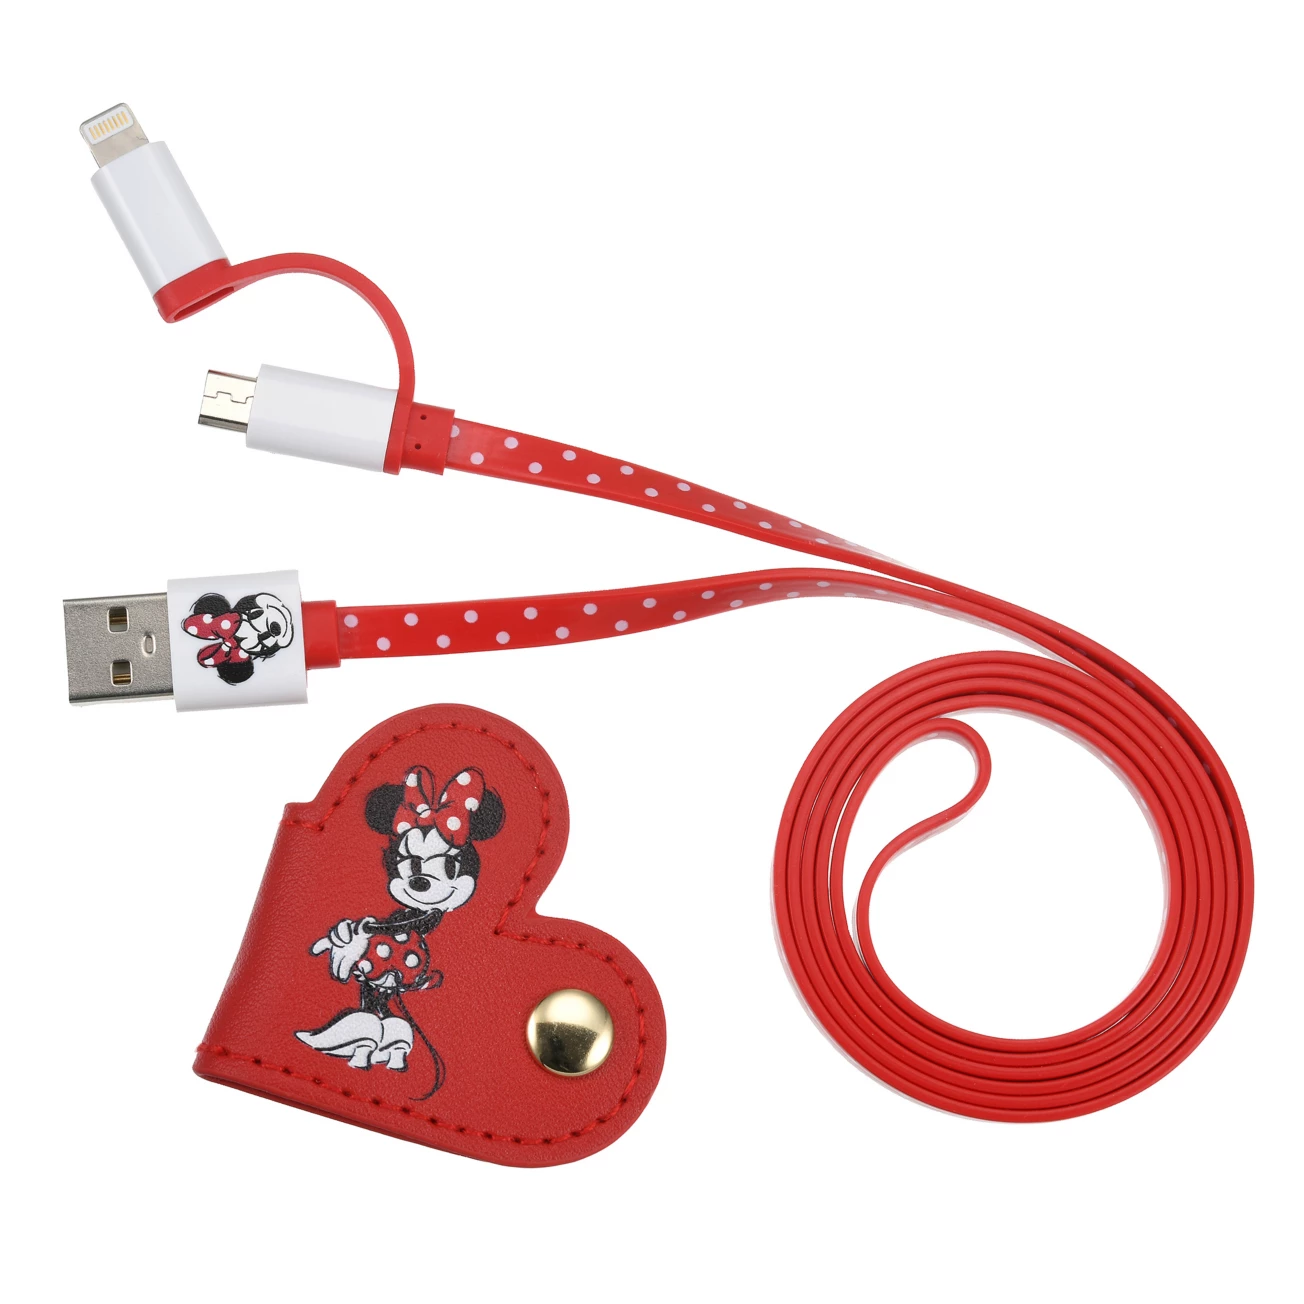 SDJ - Minnie Day 2022 - USB cable